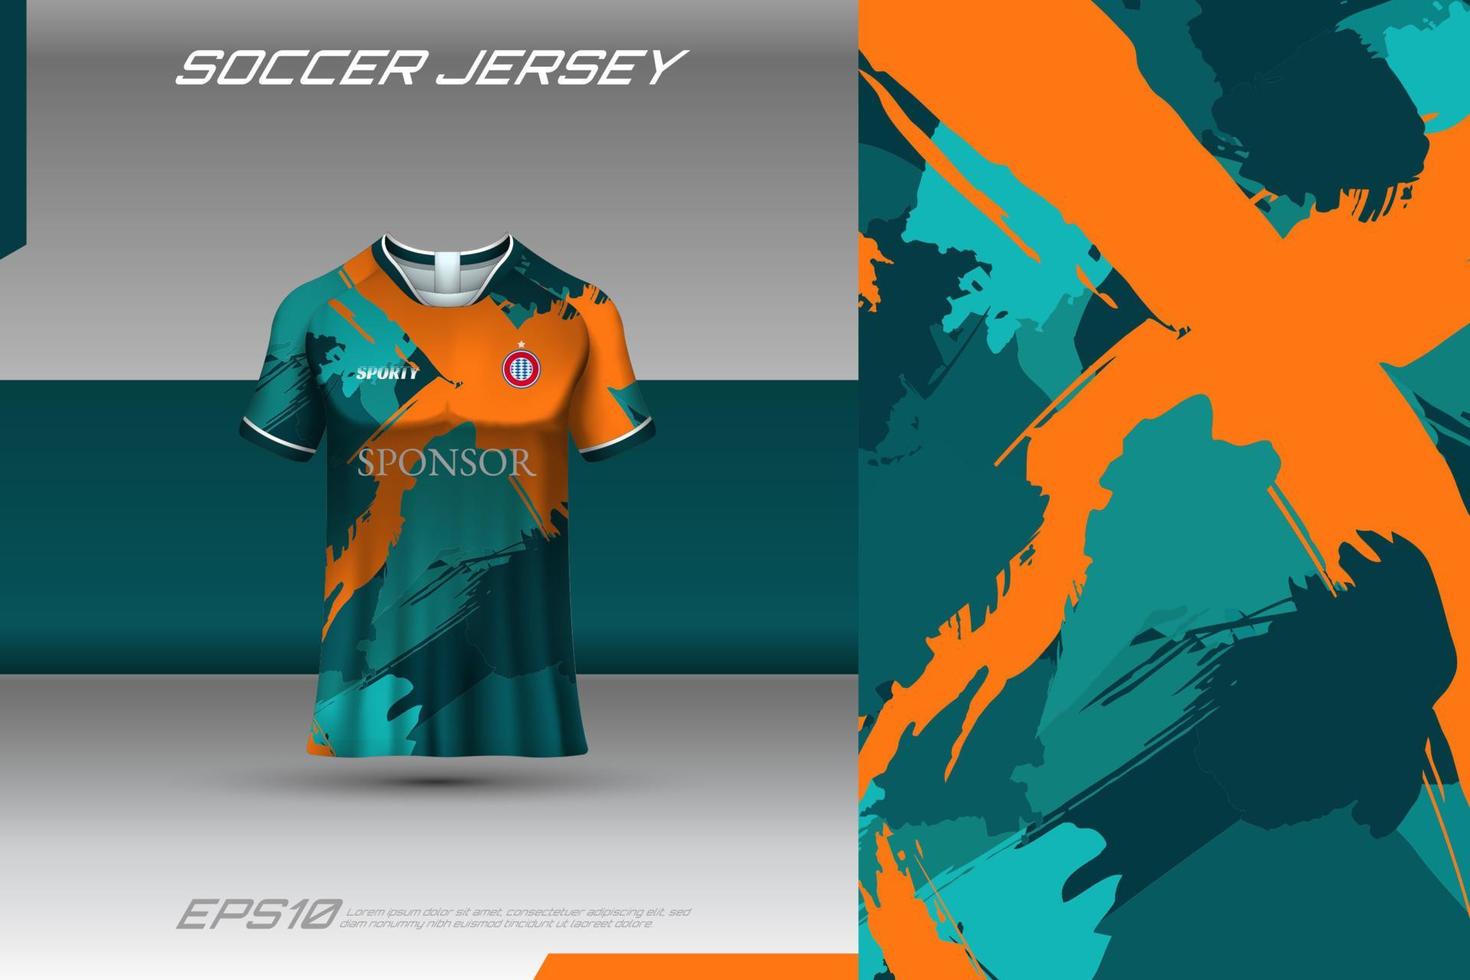 sporttröja och t-shirt mall sporttröja design vektor mockup. sportdesign för fotboll, racing, speltröja. vektor.